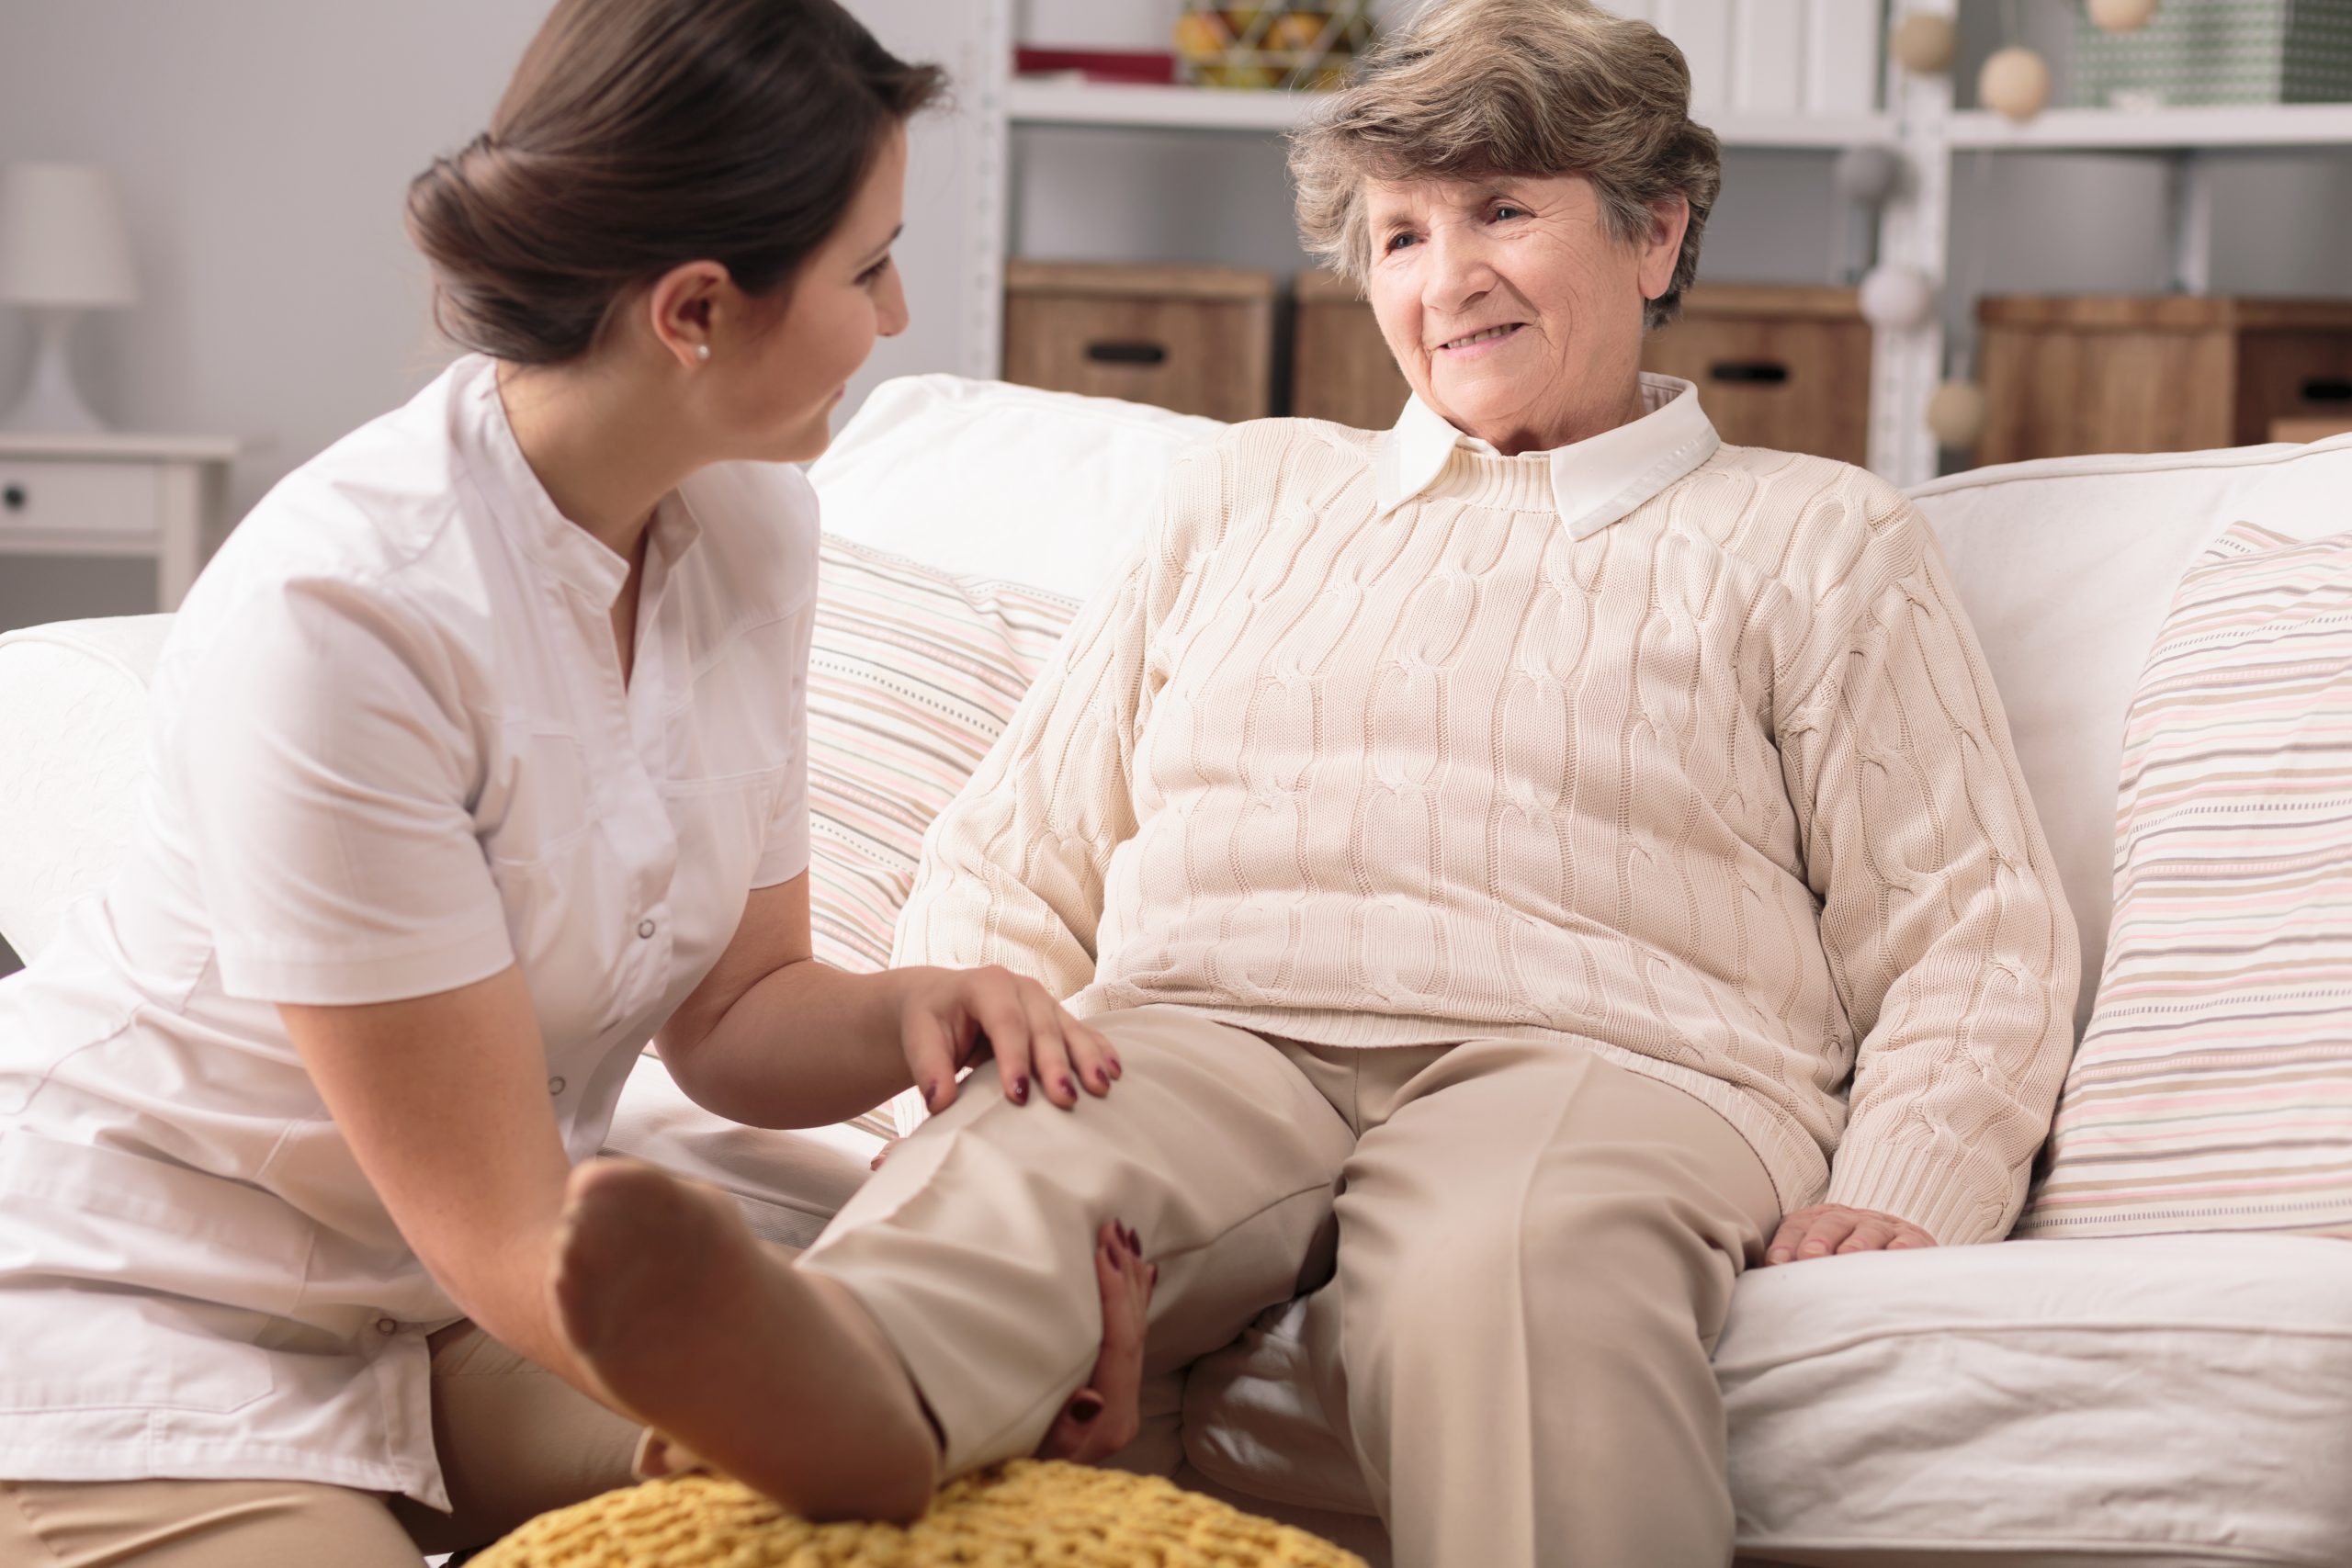 Судороги у пожилых женщин причины и лечение. Диван для сиделки. Лечение судорог в ногах у пожилых женщин. Лечение судорог ног в пожилом возрасте народными средствами.